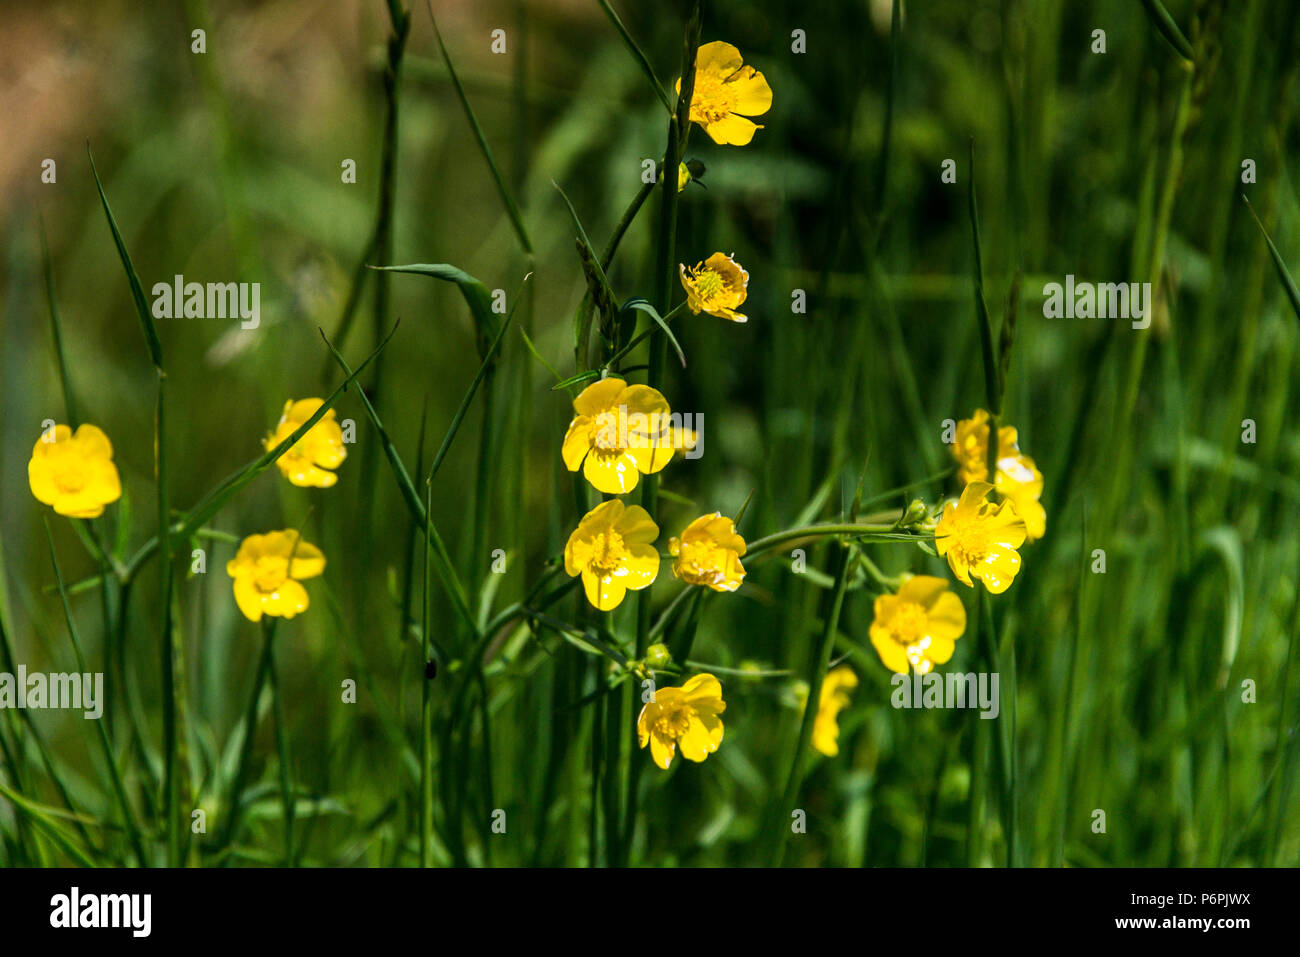 Meadow buttercups (Ranunculus acris) Stock Photo